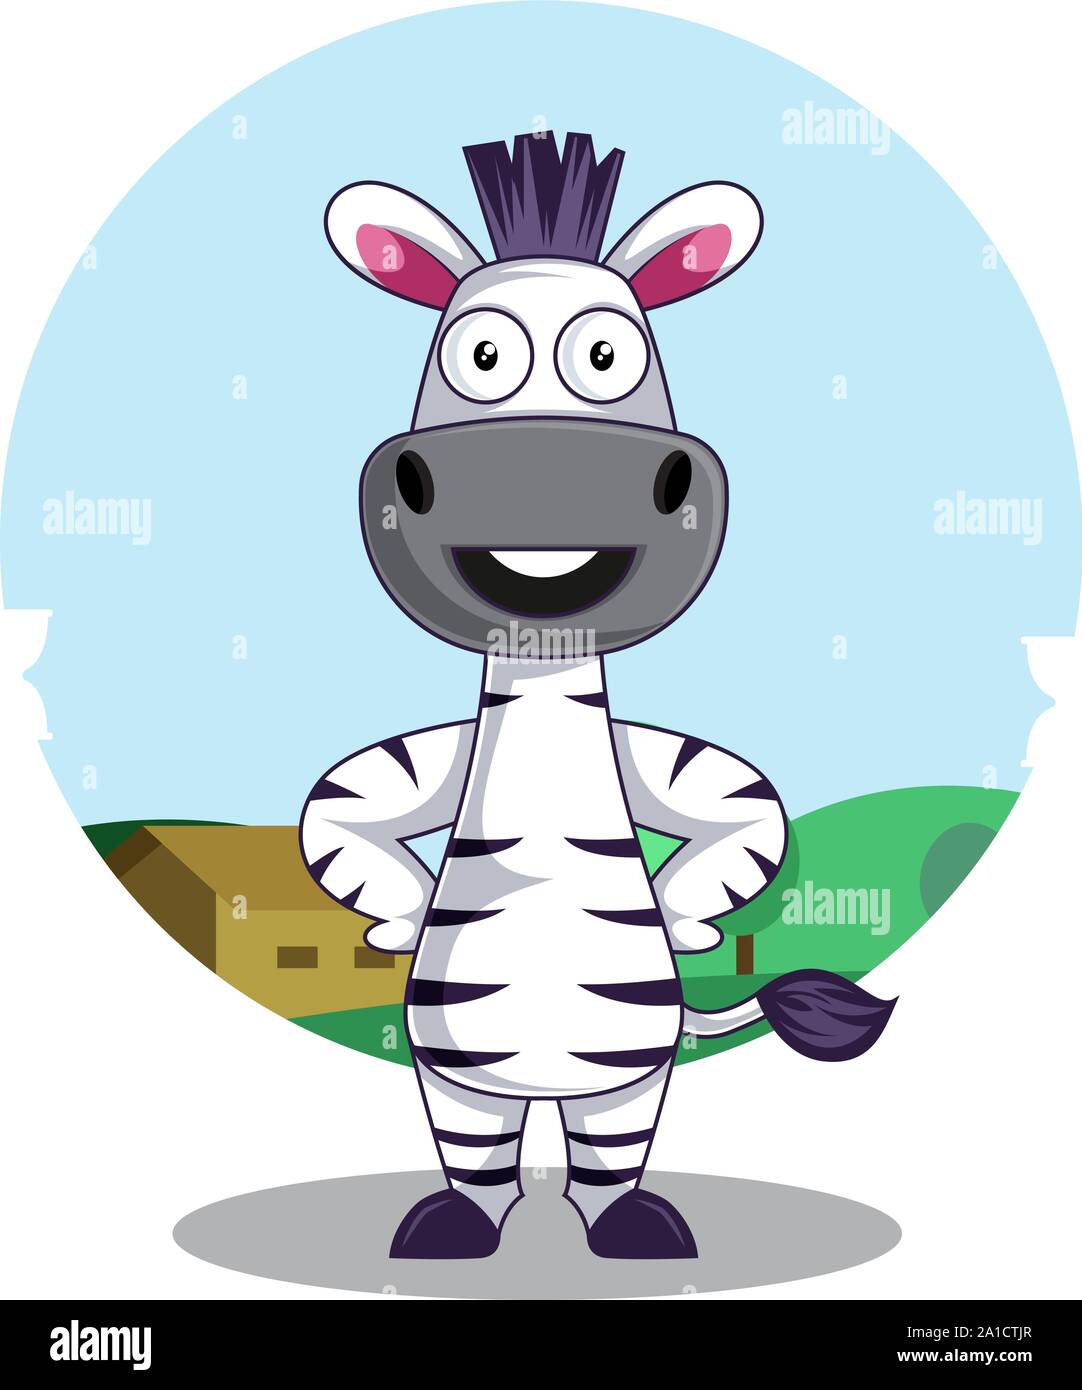 Zebra standing, illustration, vector on white background. Stock Vector